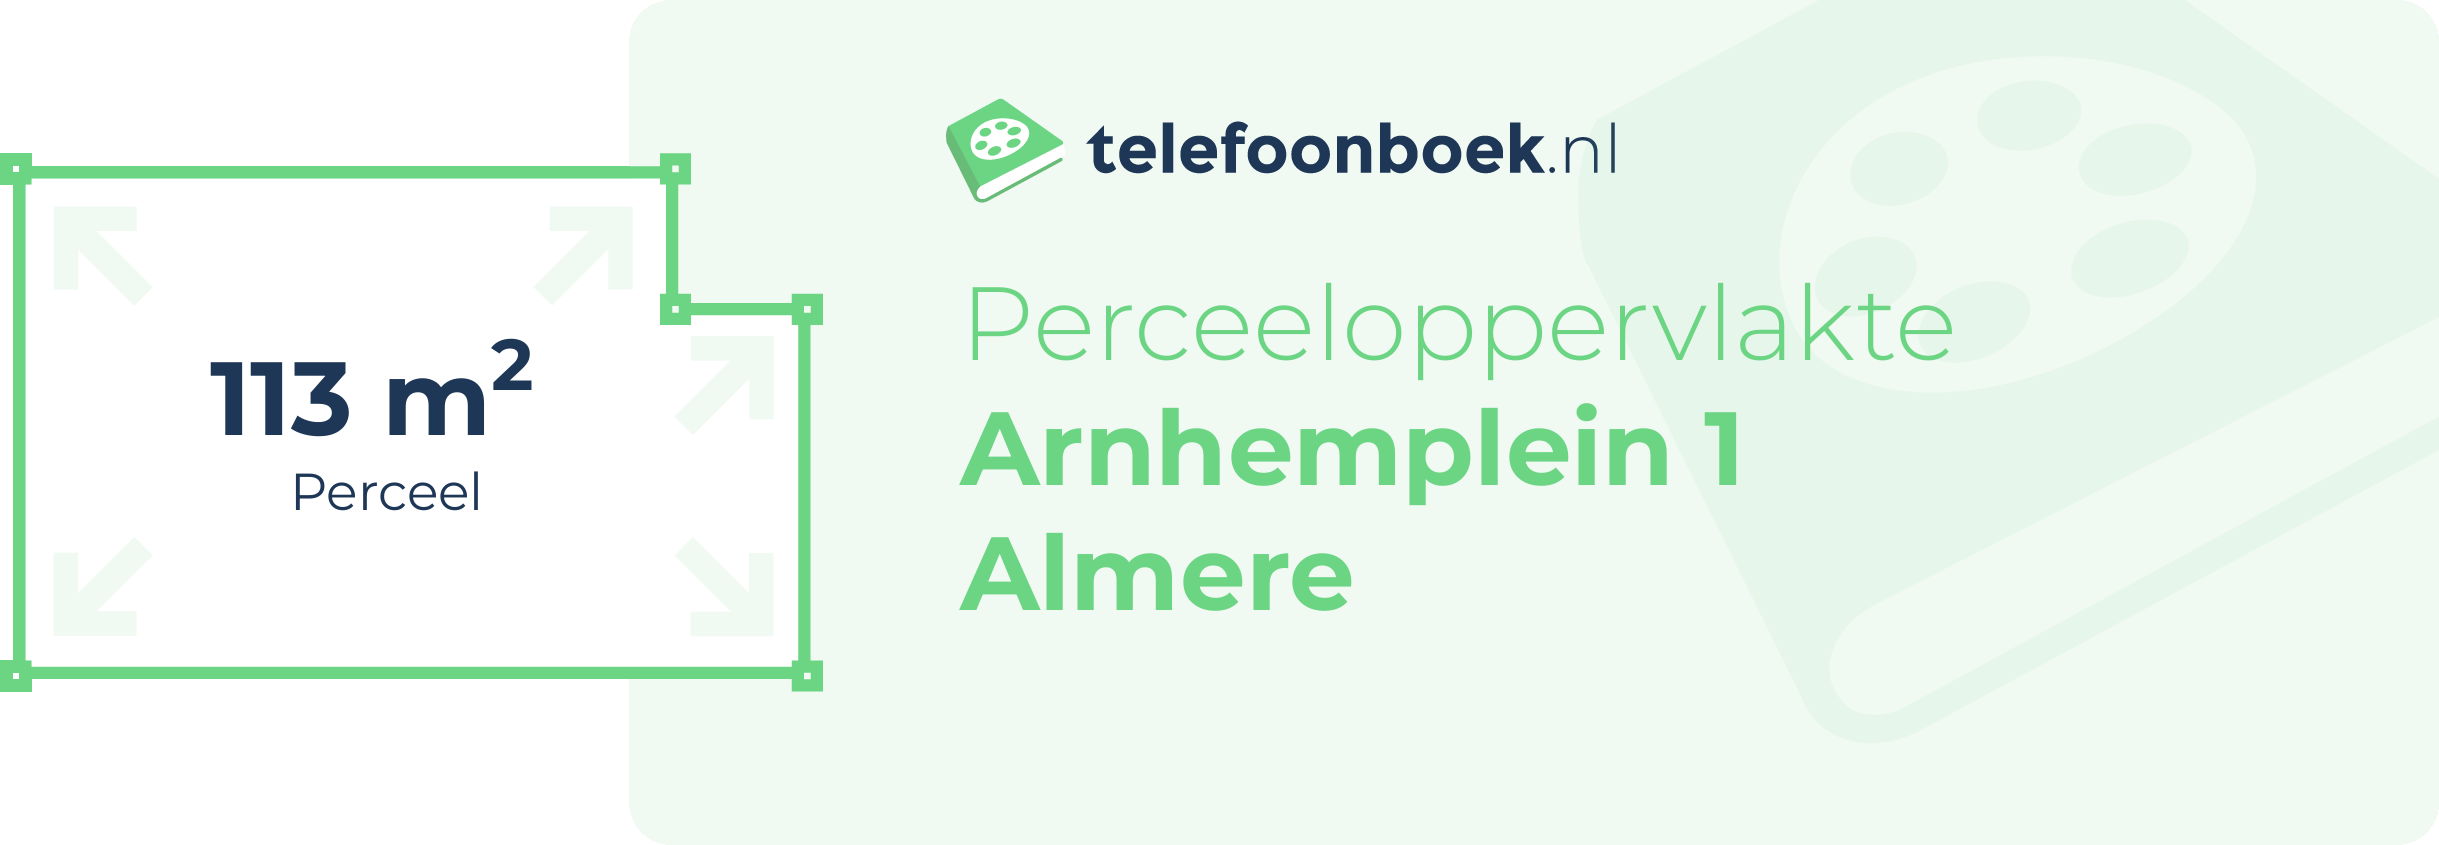 Perceeloppervlakte Arnhemplein 1 Almere